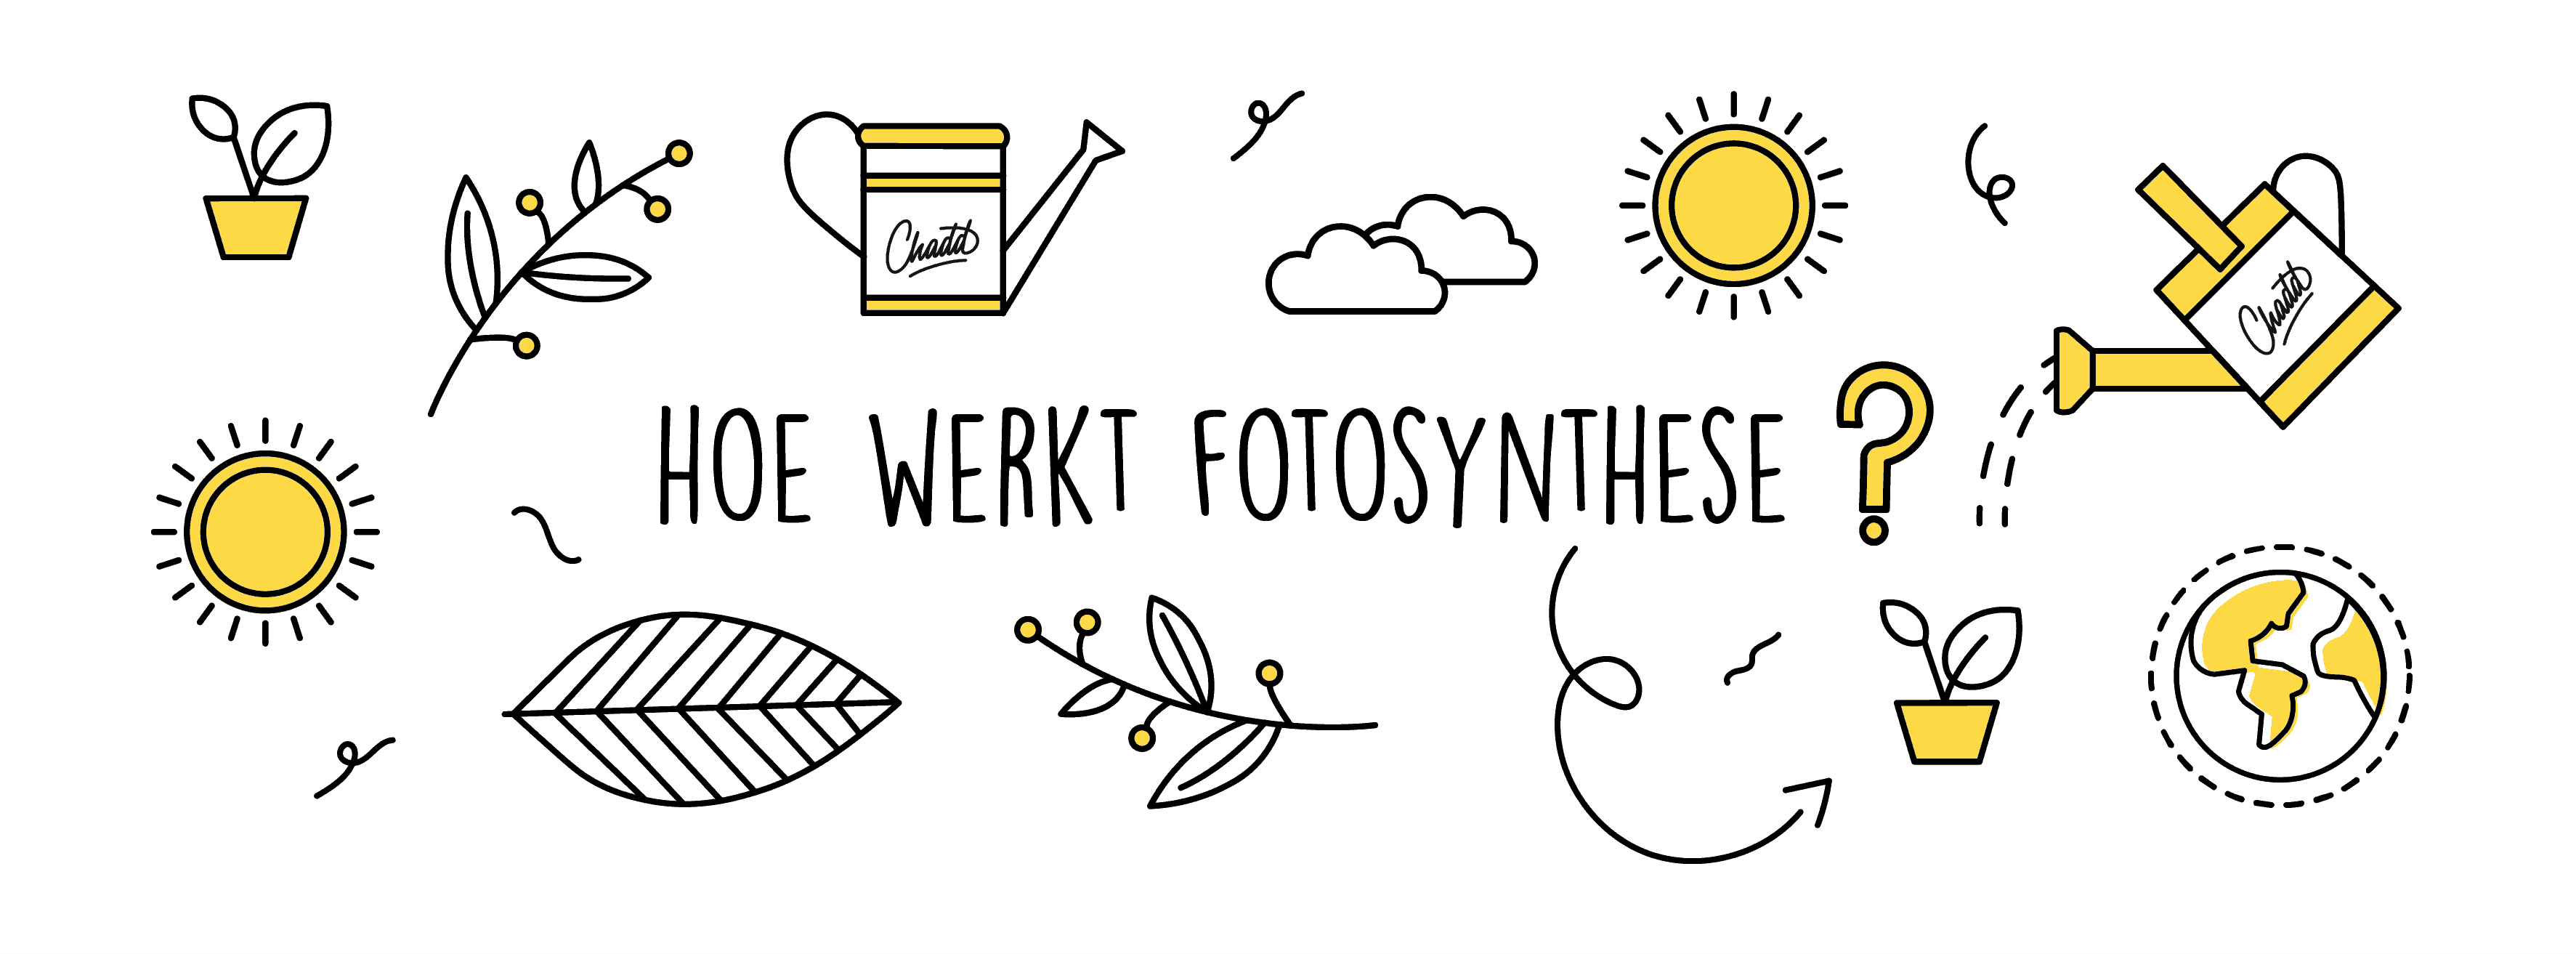 Hoe werkt fotosynthese